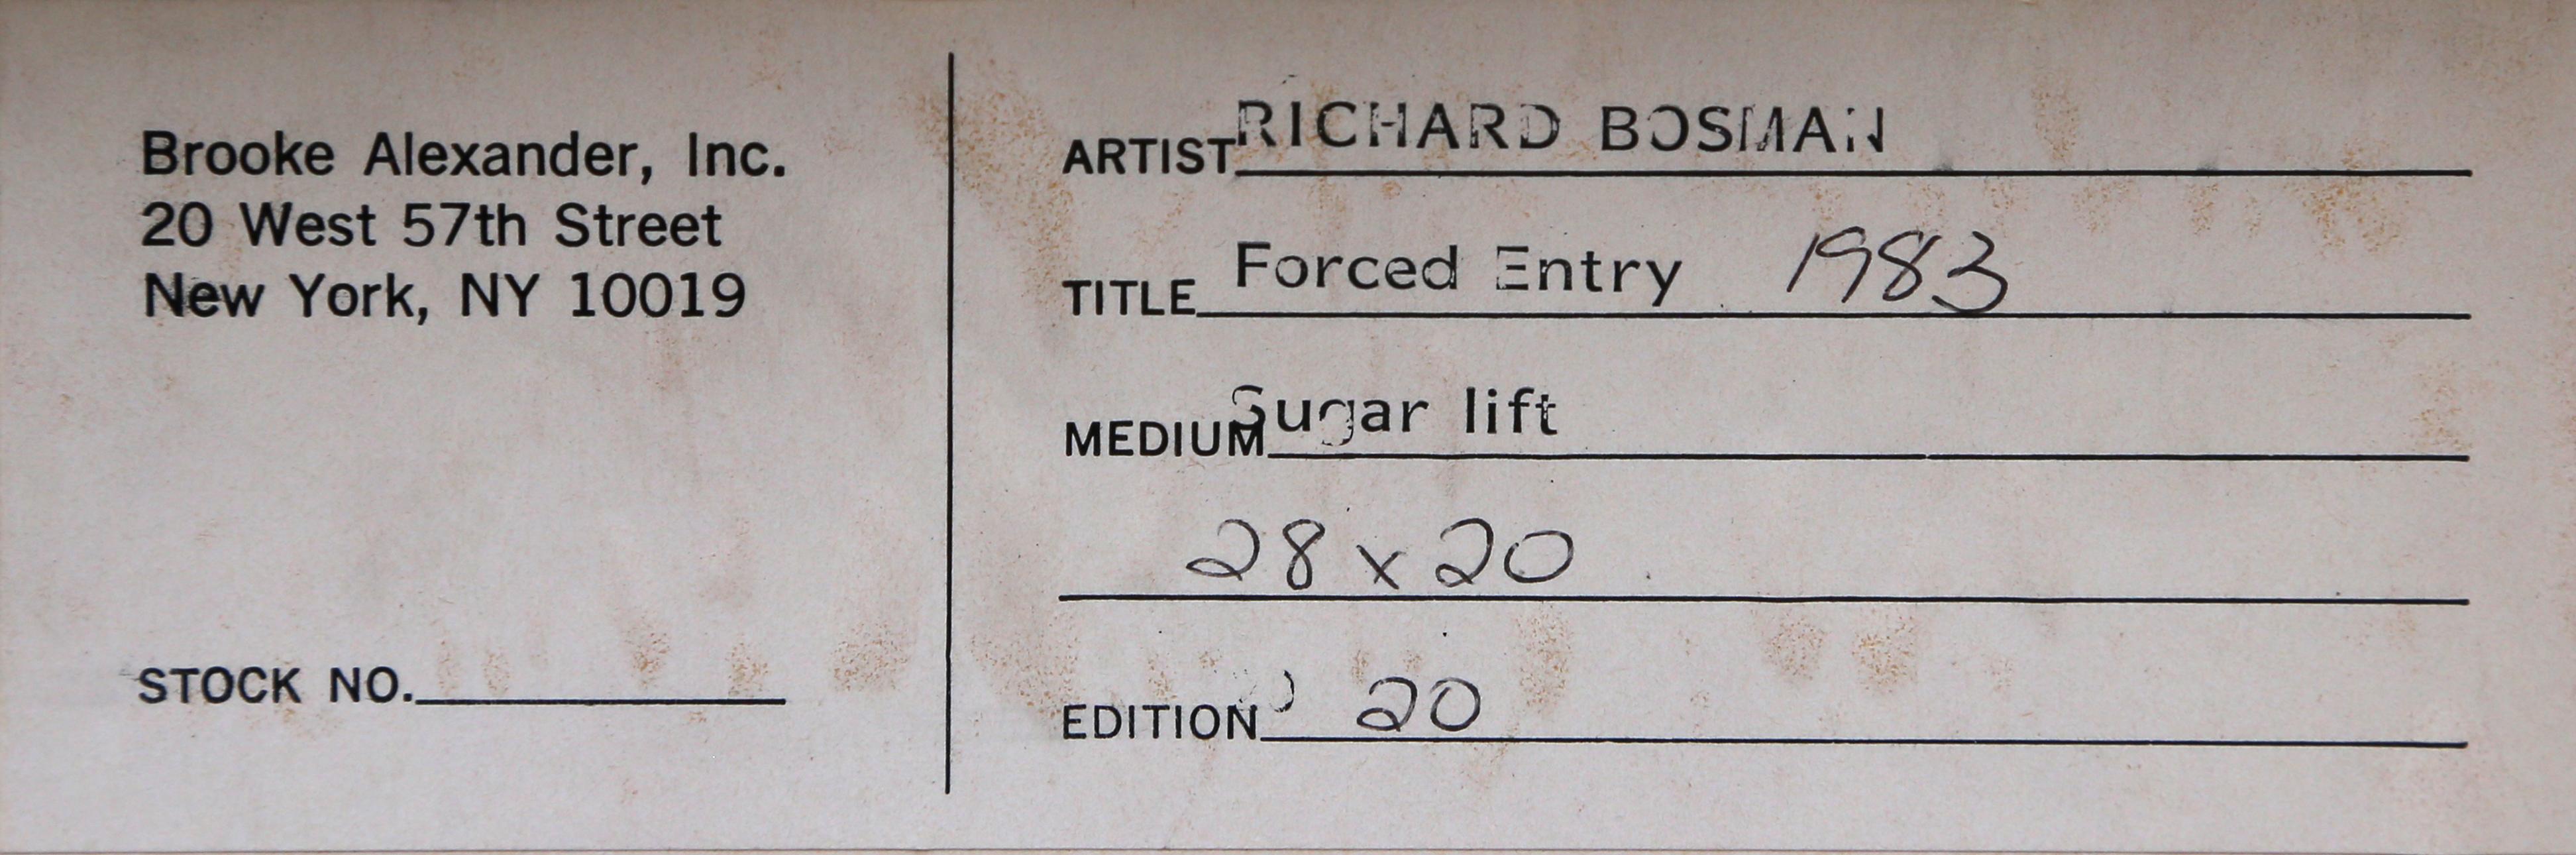 Forced Entry - Print by Richard Bosman